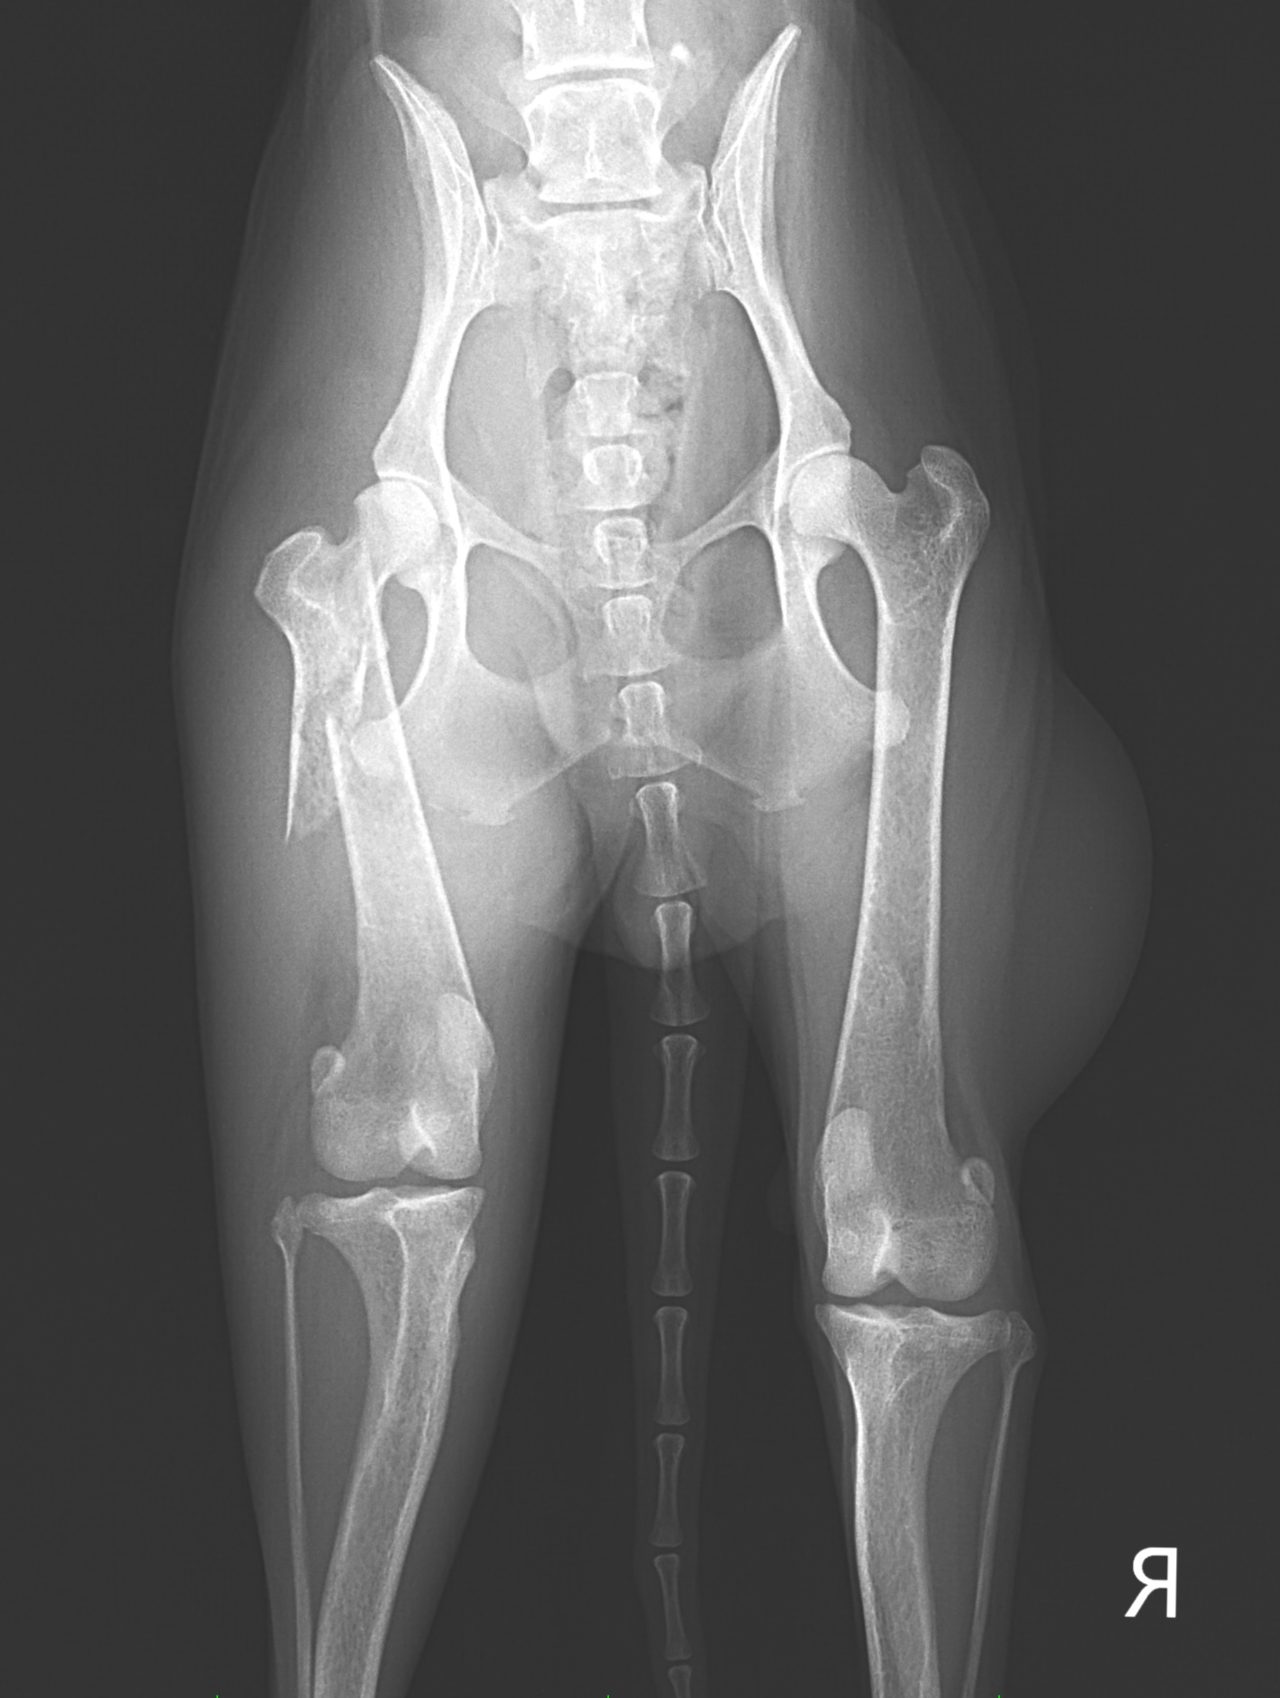 【大腿骨頸部骨折】骨折の分類と治療方法を勉強しよう！ - KENTO BLOG